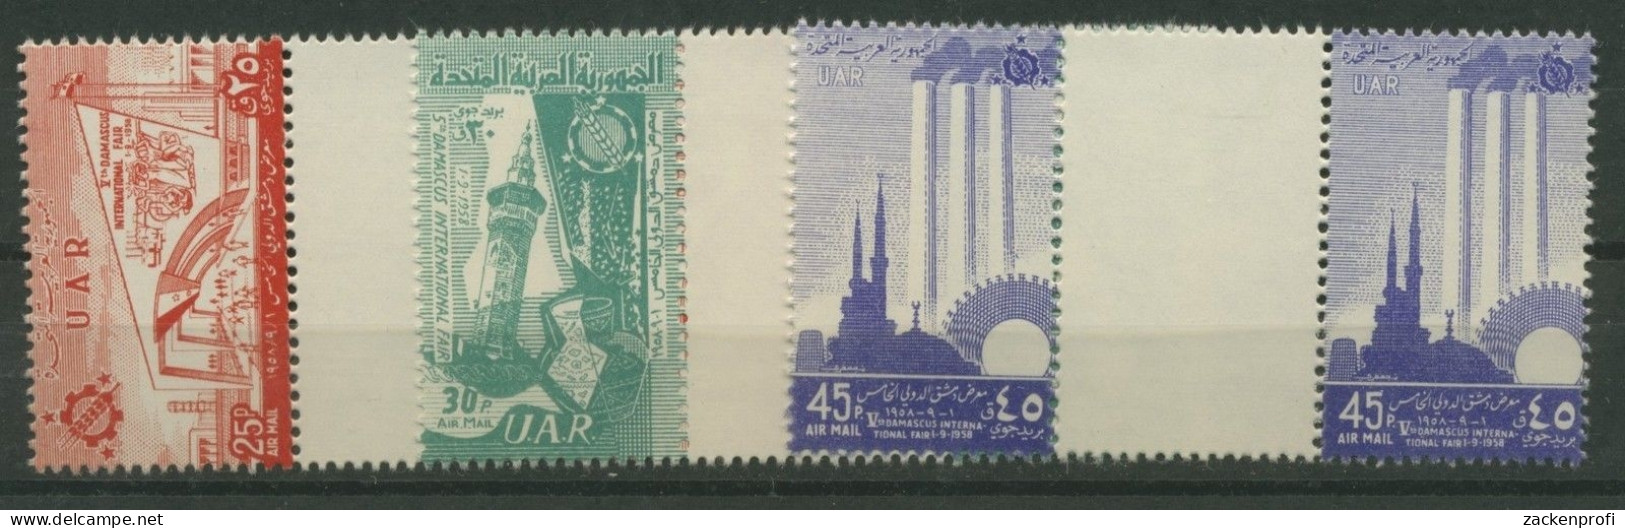 Syrien VAR 1958 Messe Damaskus V9/11 Mit Zwischensteg Postfrisch (G1788) - Syrië